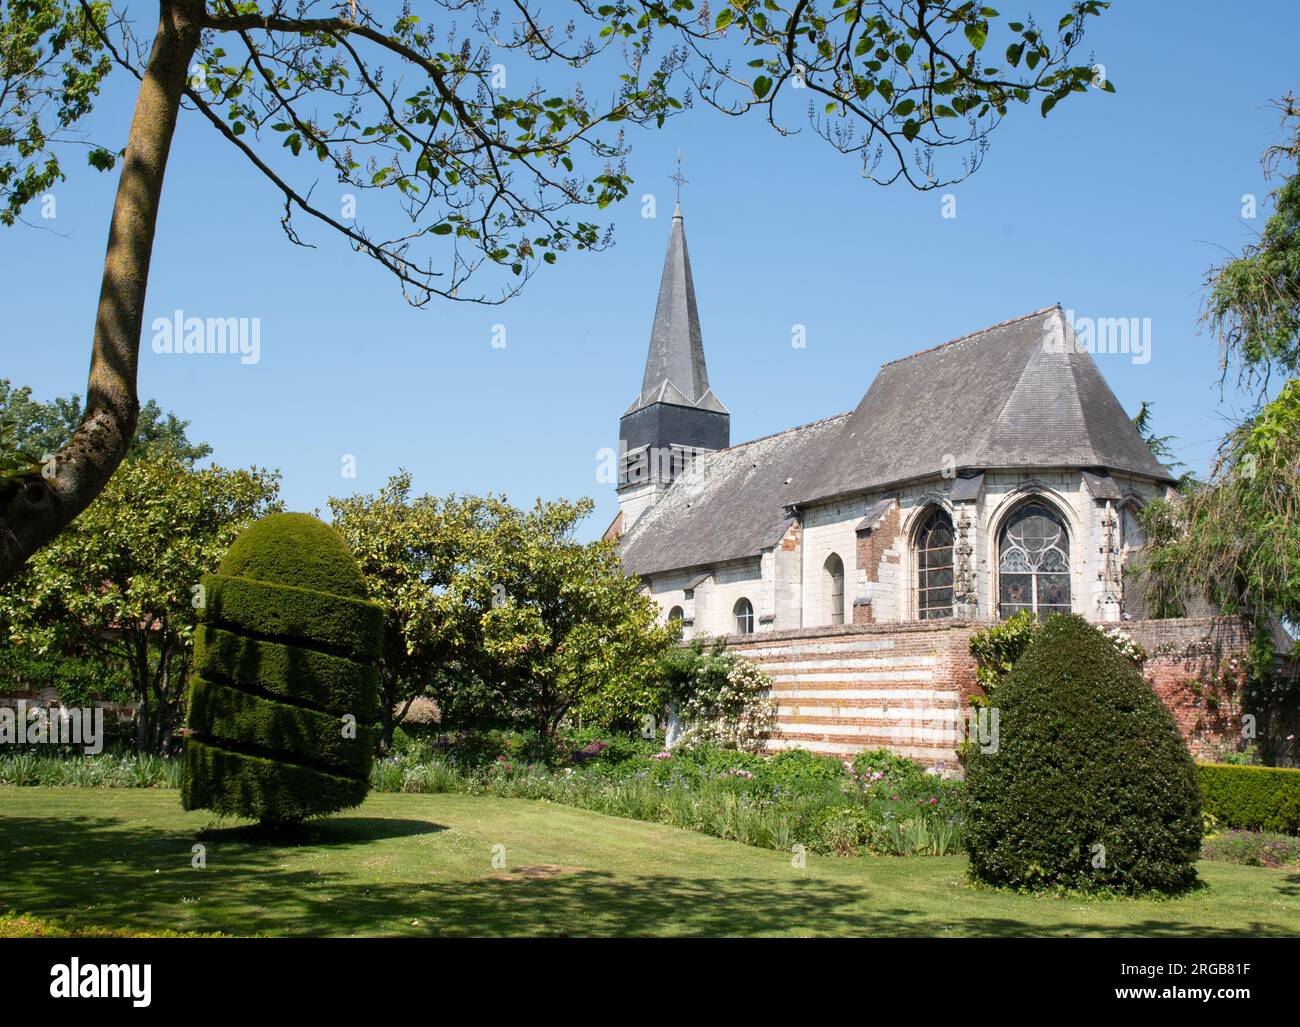 Eglise Notre dame de l Assomption, Maizicourt, Somme, France Stock Photo